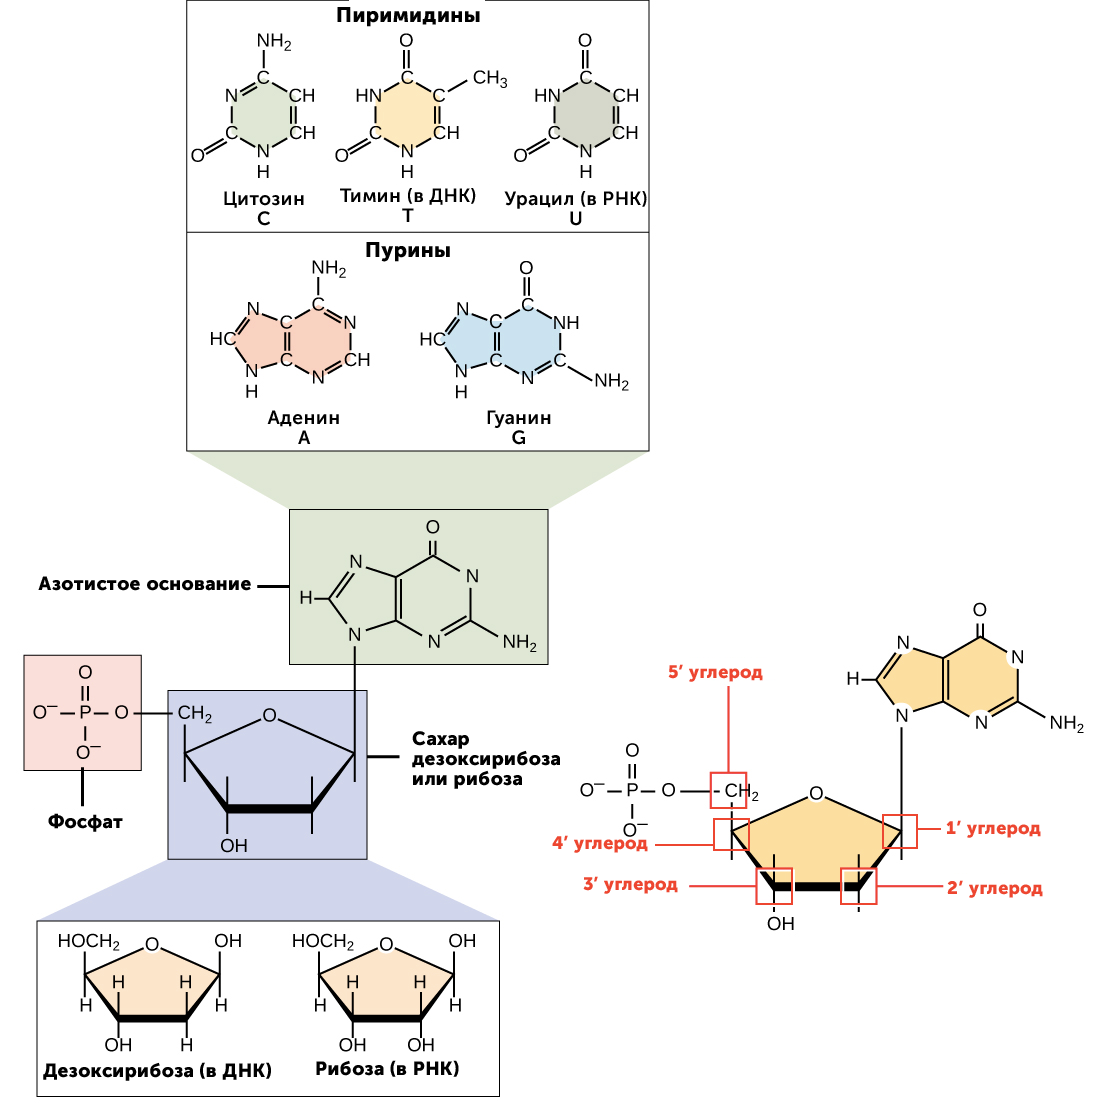 Нуклеотиды с рибозой. Аденин рибоза. Аденин гуанин цитозин Тимин урацил комплементарность. Нуклеотиды ДНК И РНК.